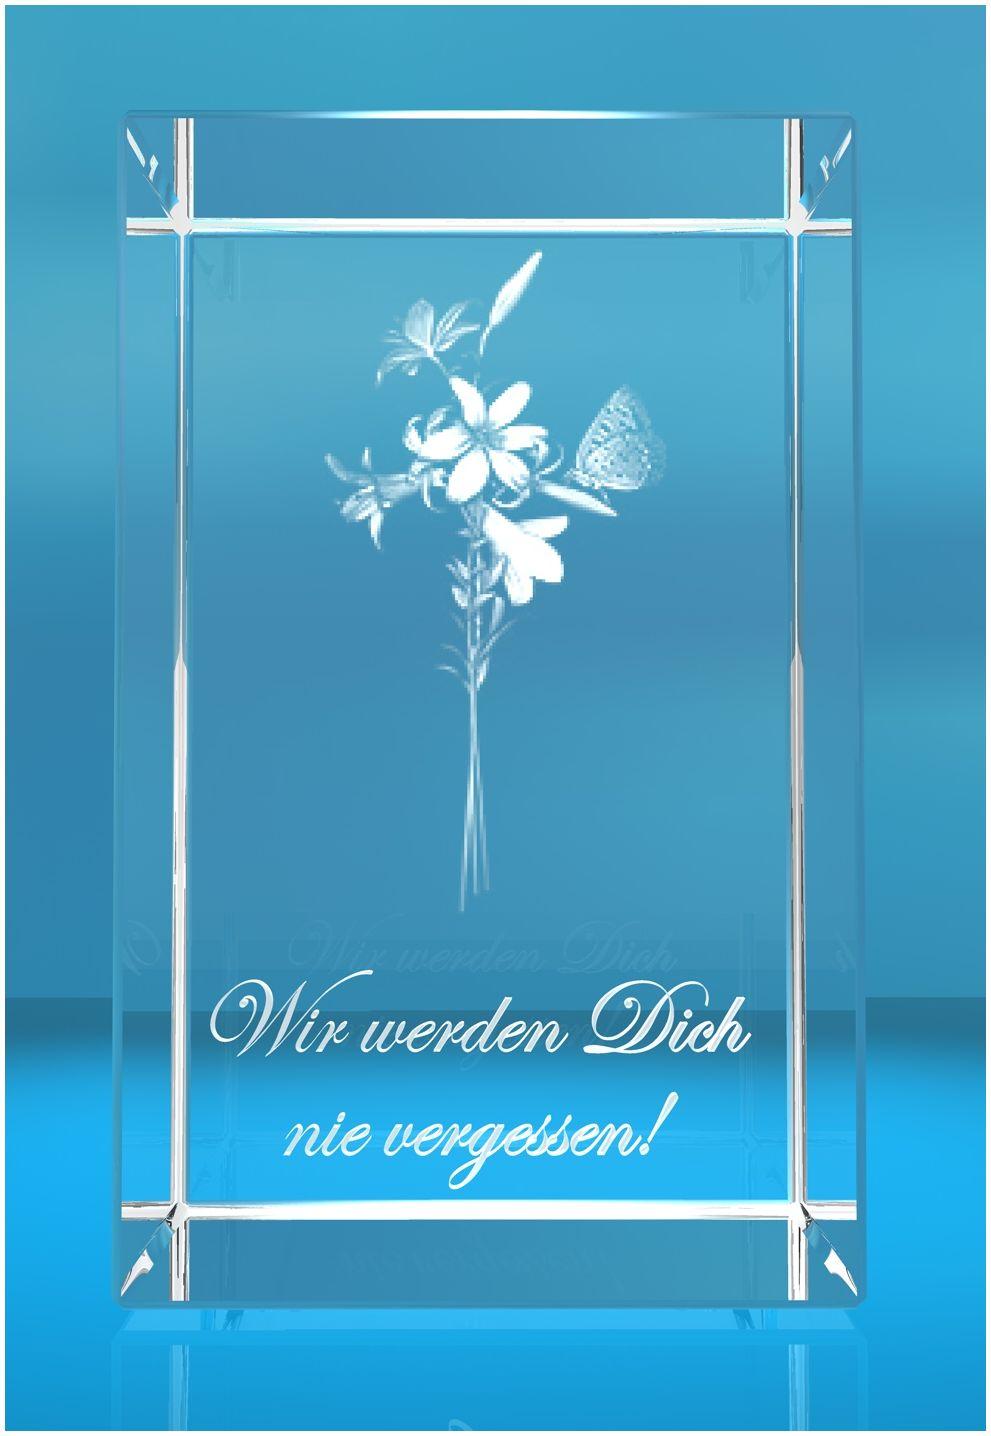 3D Glasquader   Lilien Text: Wir werden Dich nie vergessen!